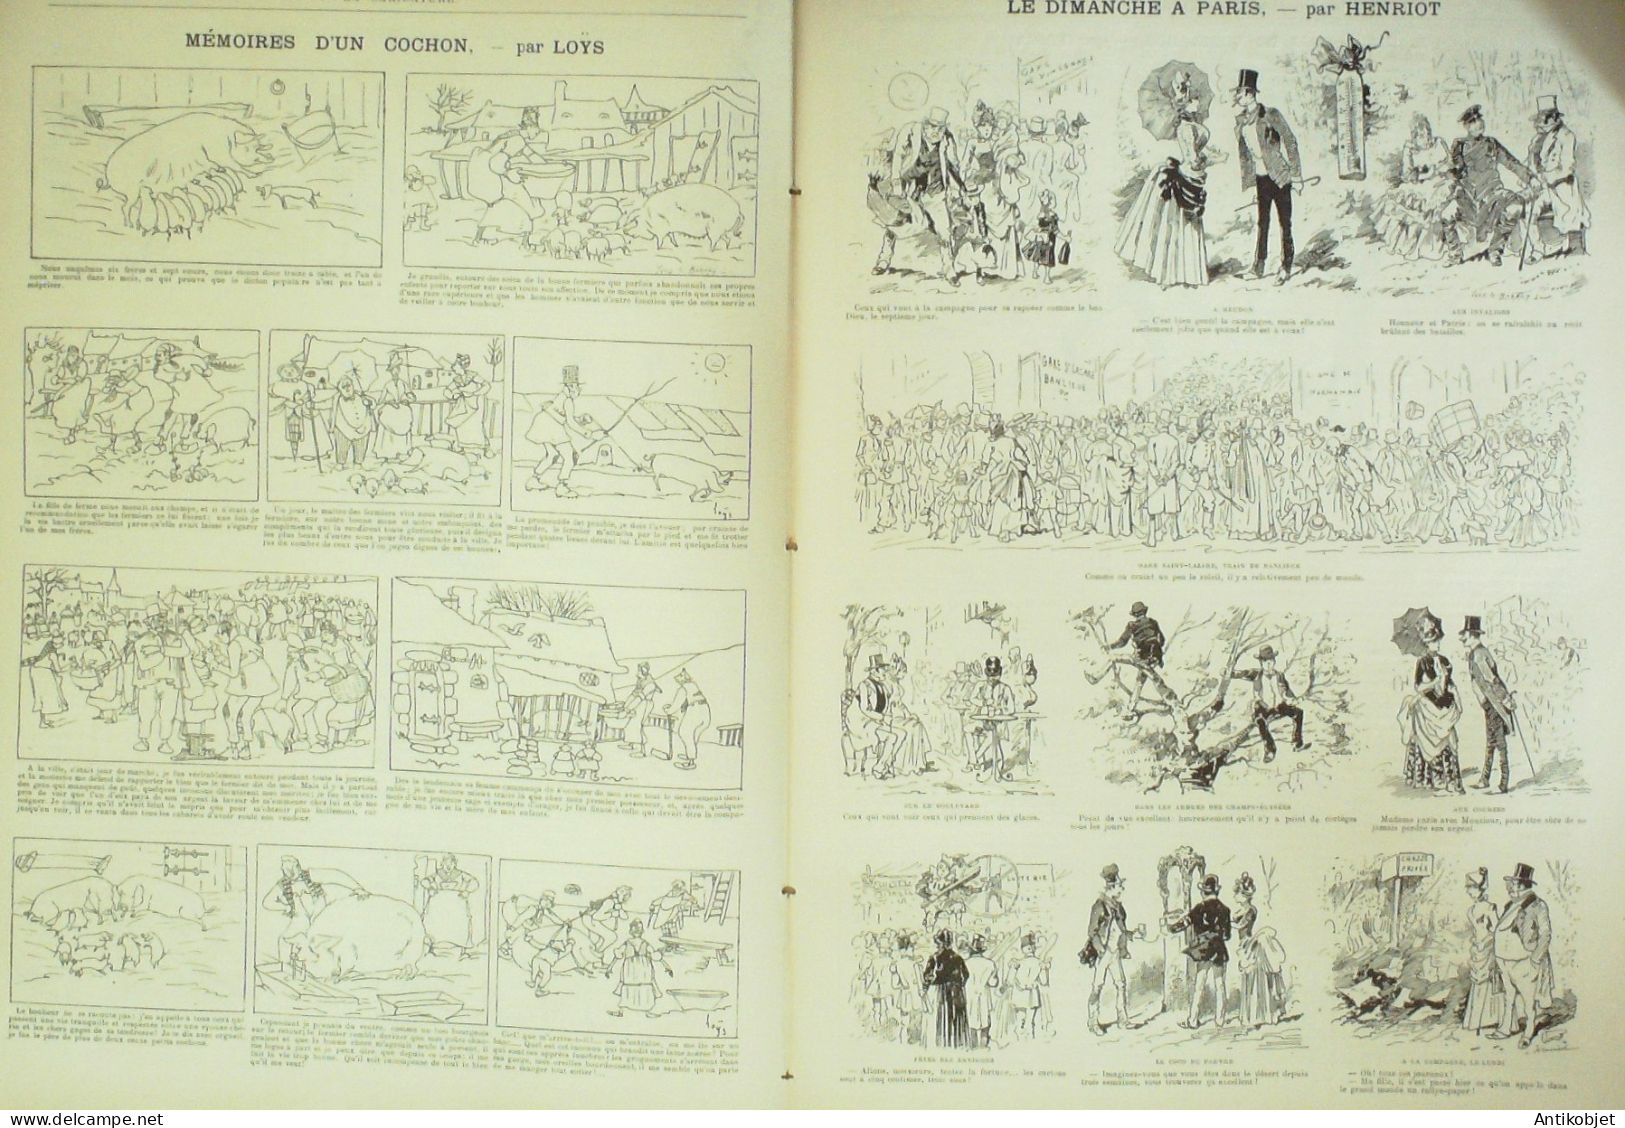 La Caricature 1885 N°292 En Route En Mer Draner Gino Dimanche à Paris Henriot Loys Job - Revistas - Antes 1900